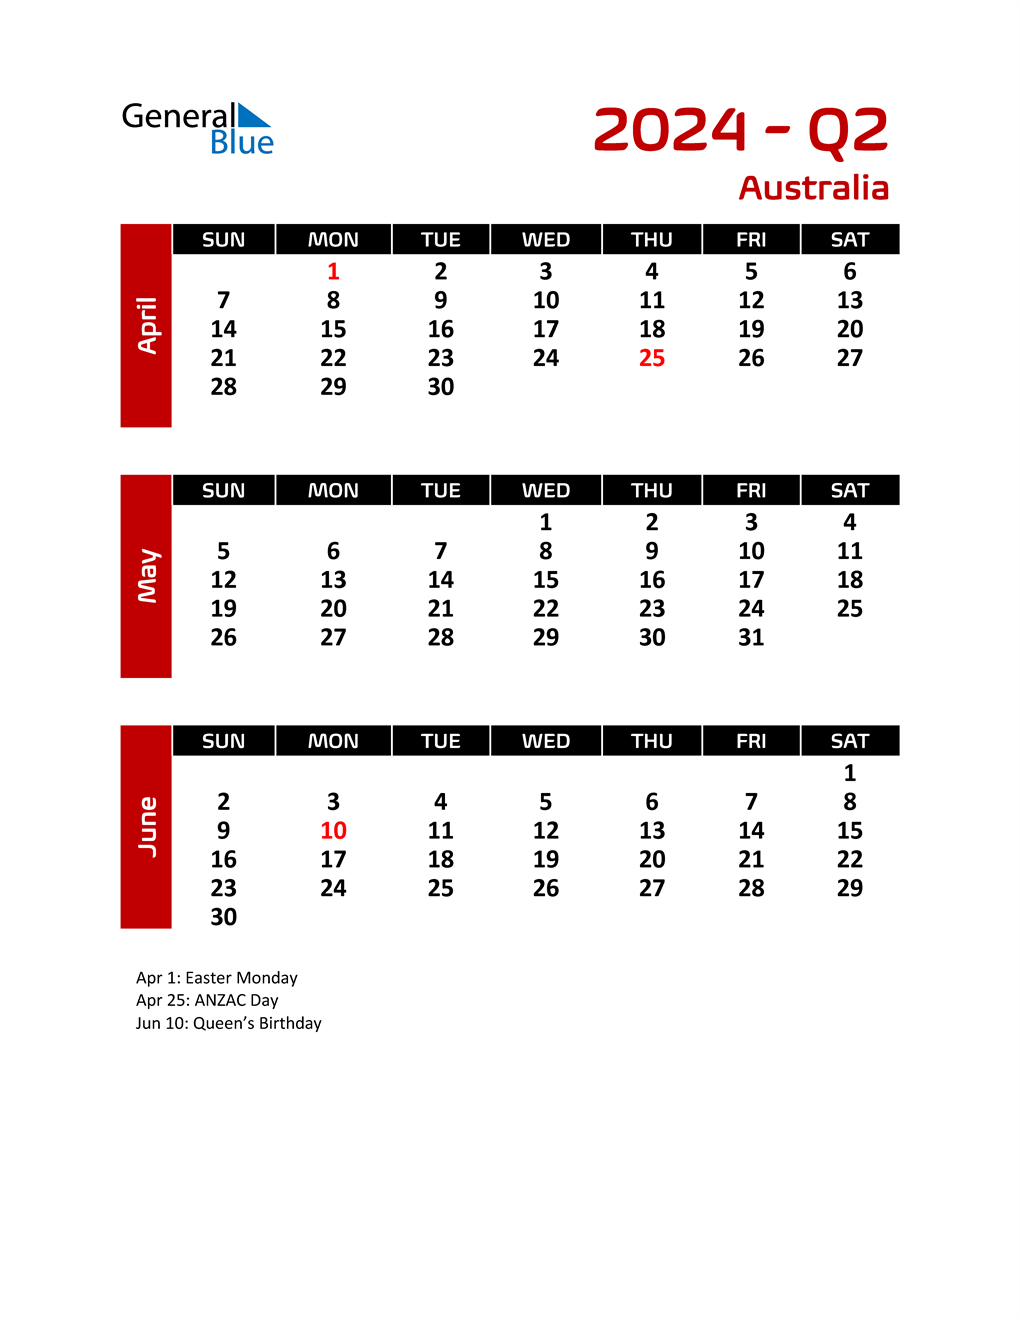 Q2 2024 Quarterly Calendar with Australia Holidays